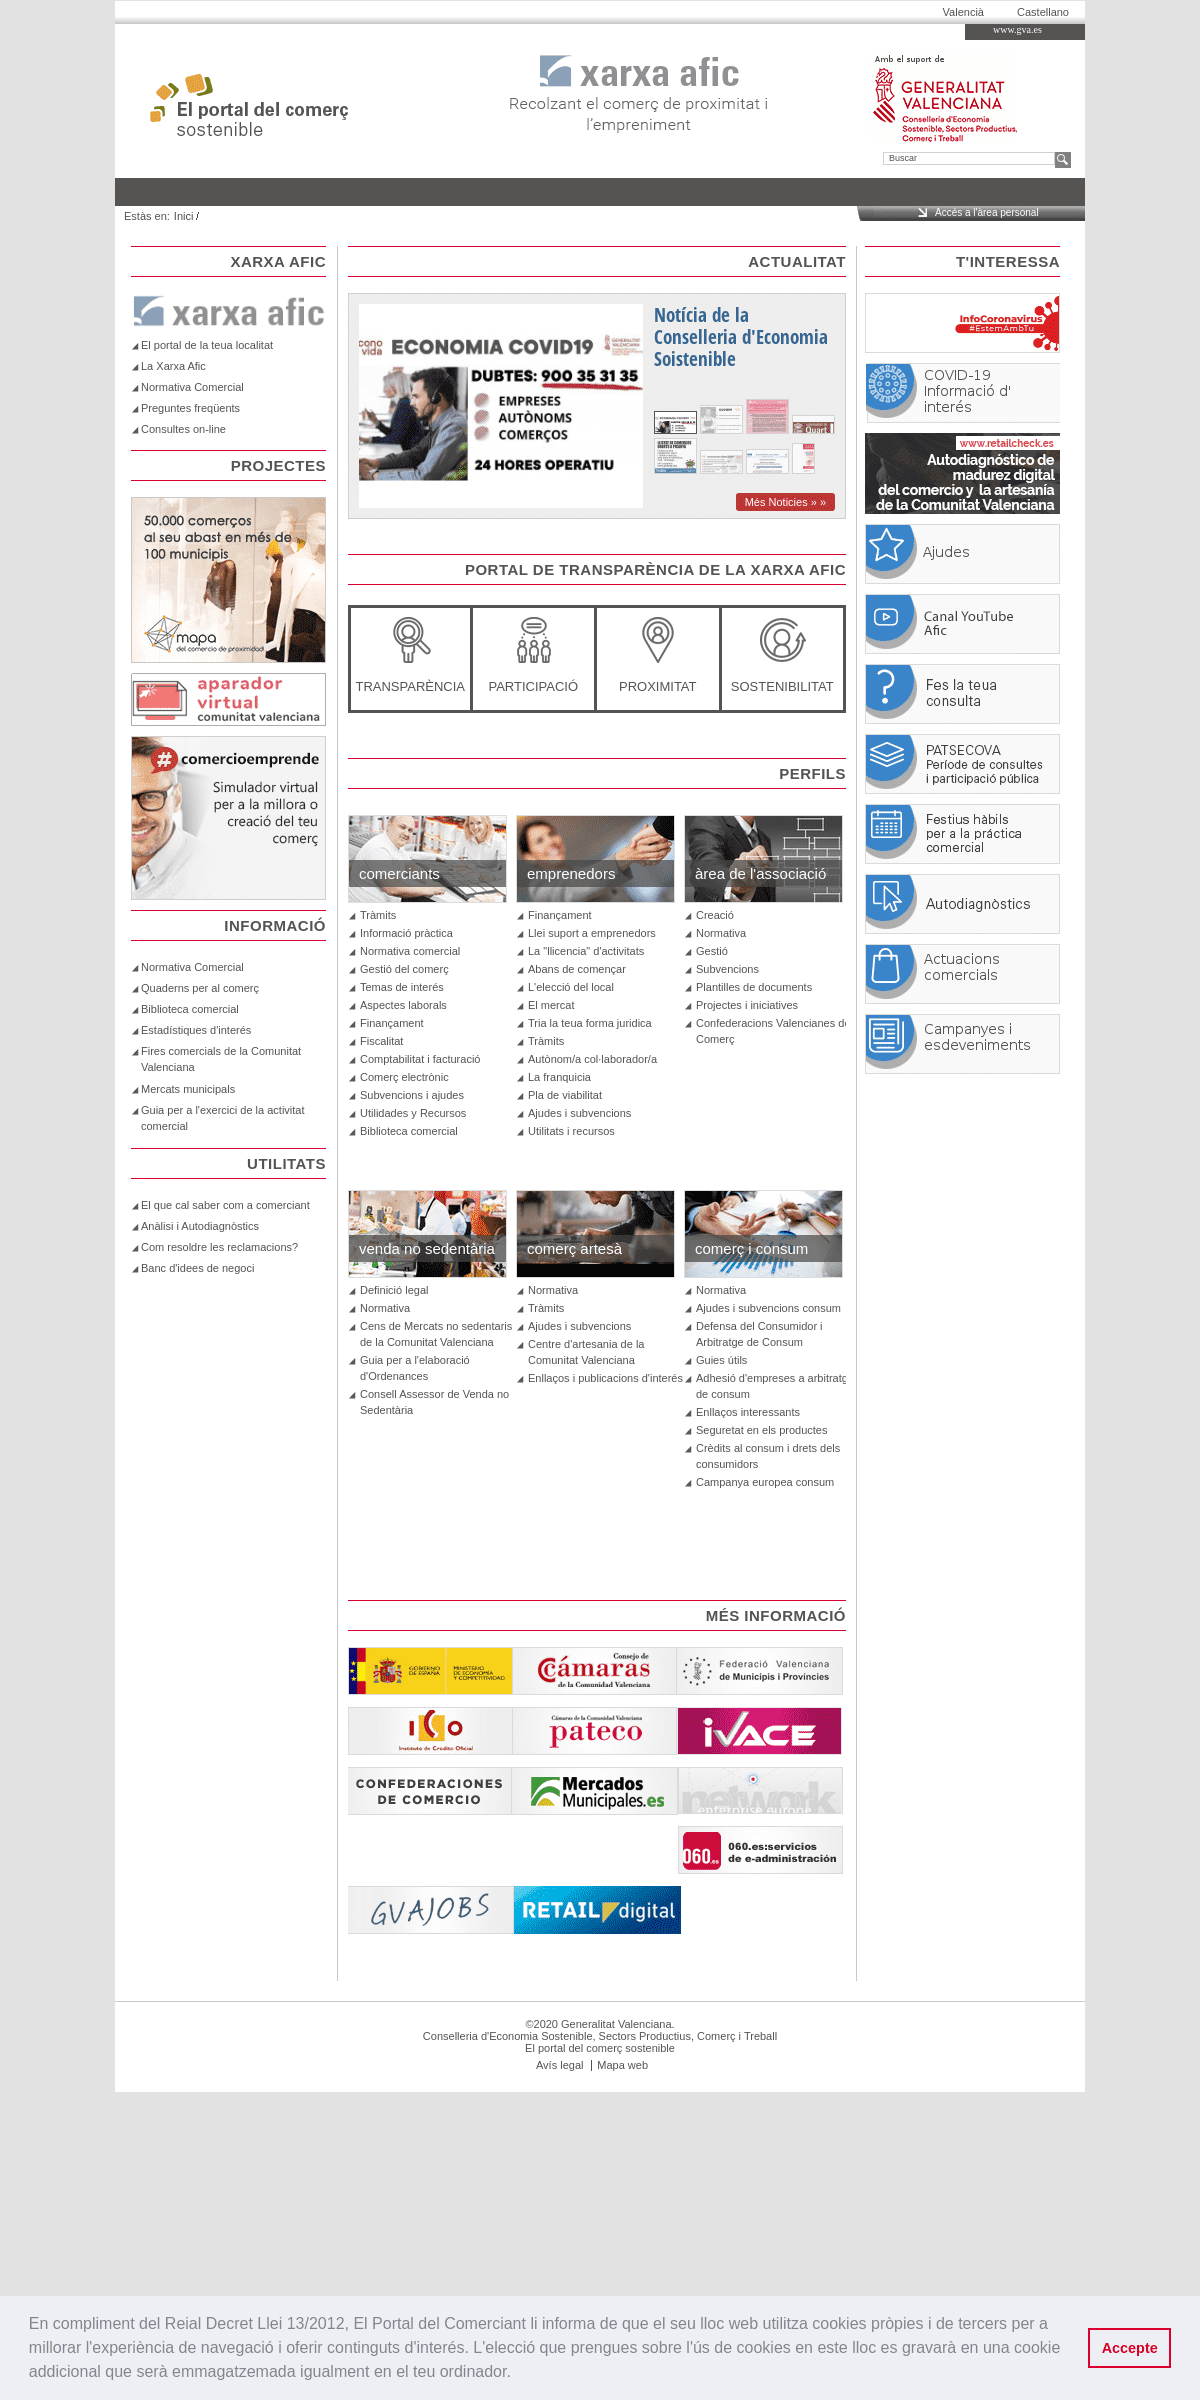 A complete backup of portaldelcomerciante.com